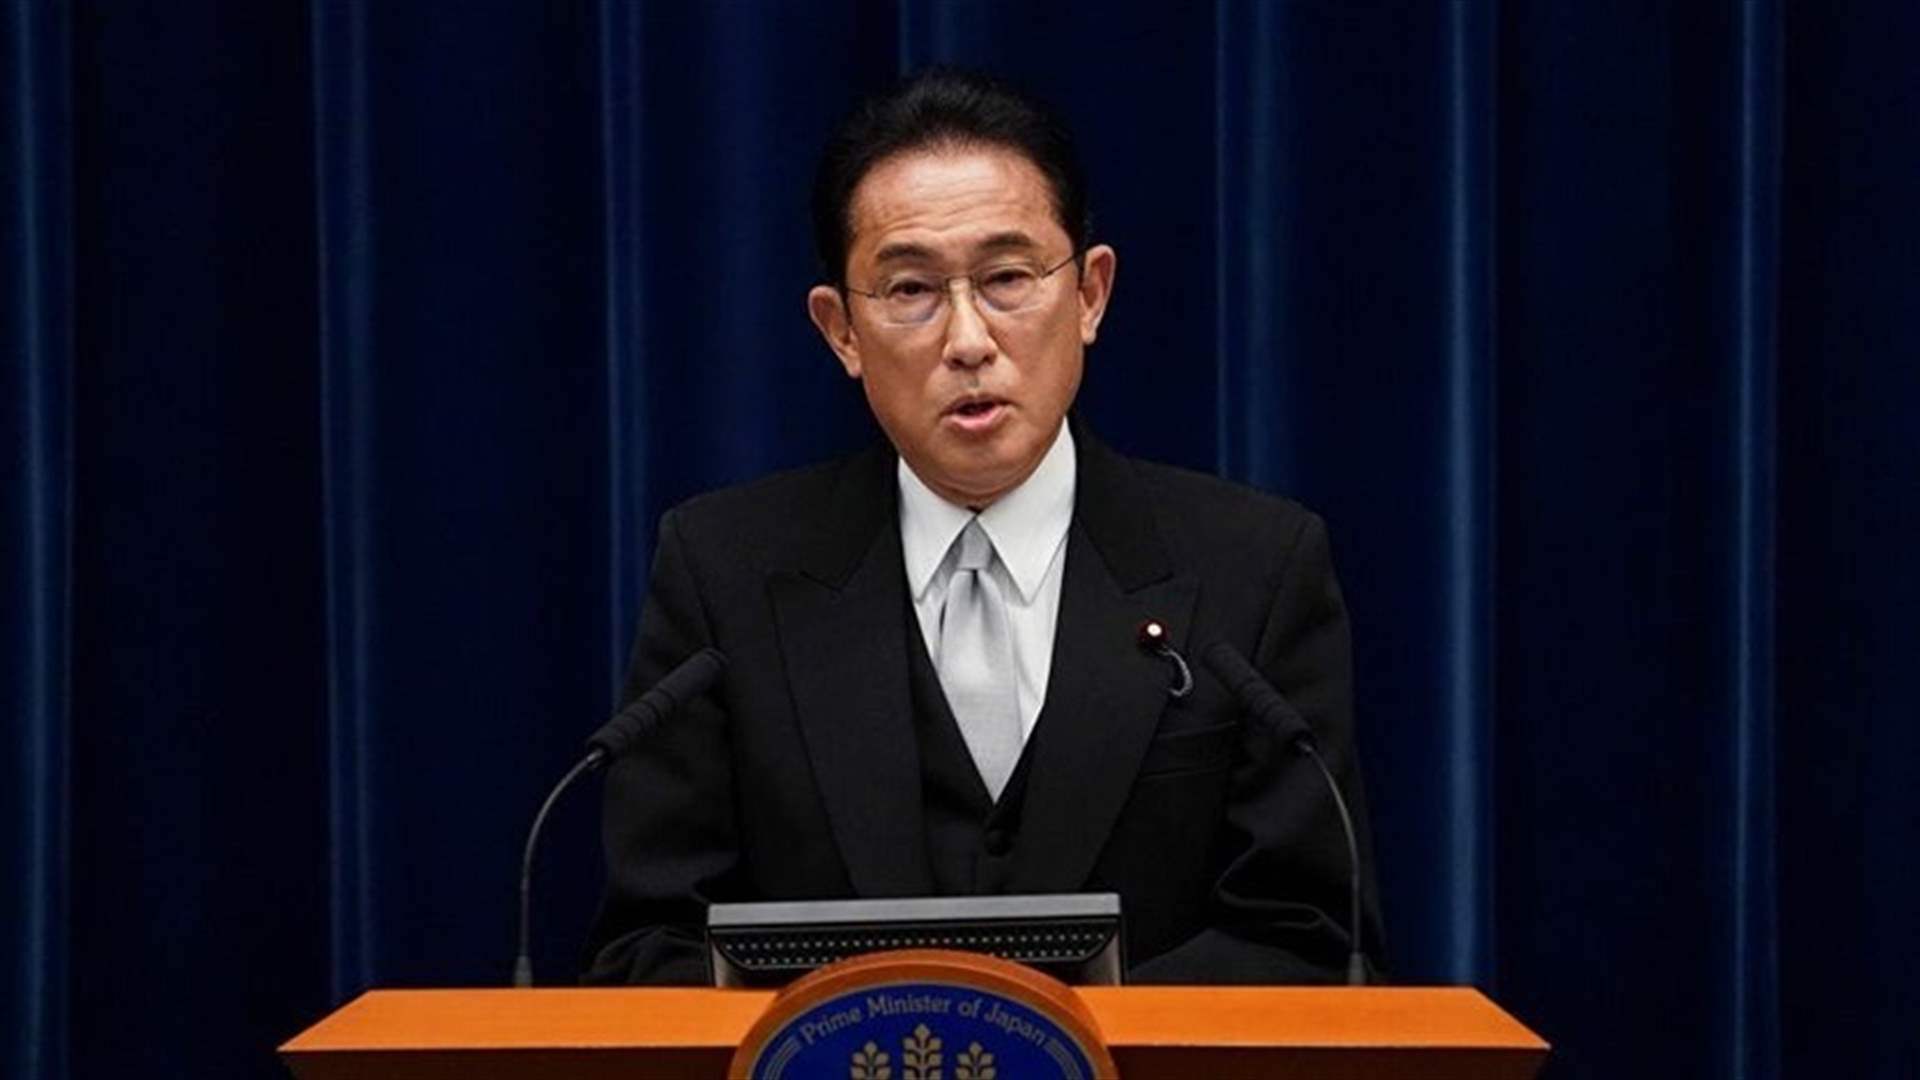 رئيس وزراء اليابان: يجب الوقوف بحزم ضد العنف بعد إطلاق النار في تجمع انتخابي لترامب